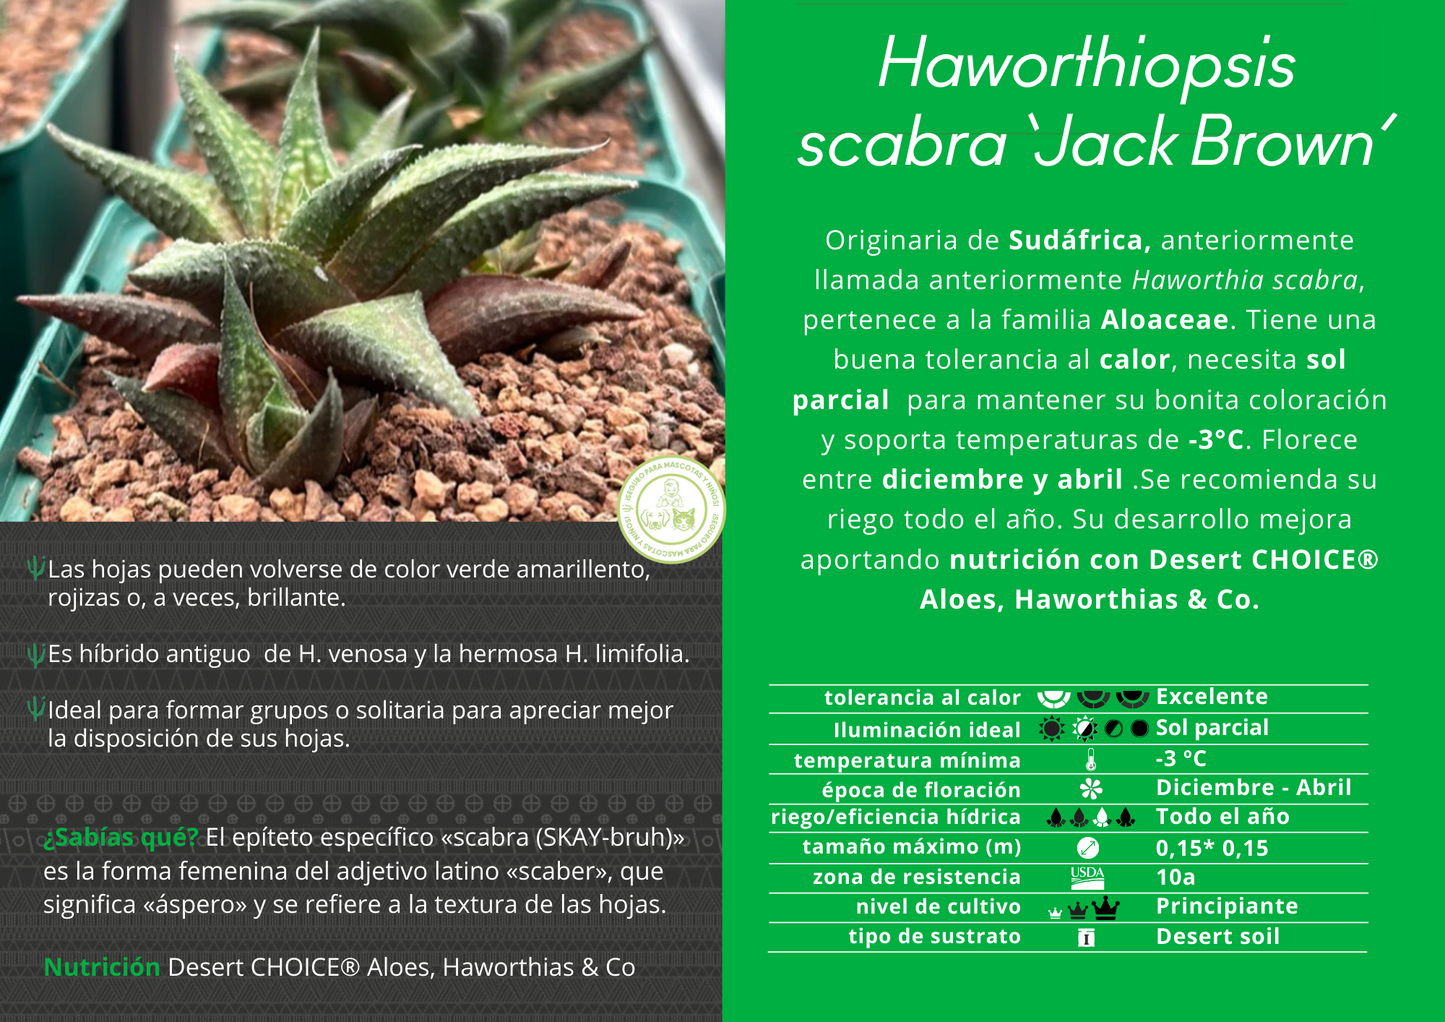 Haworthiopsis scabra ‘Jack Brown’